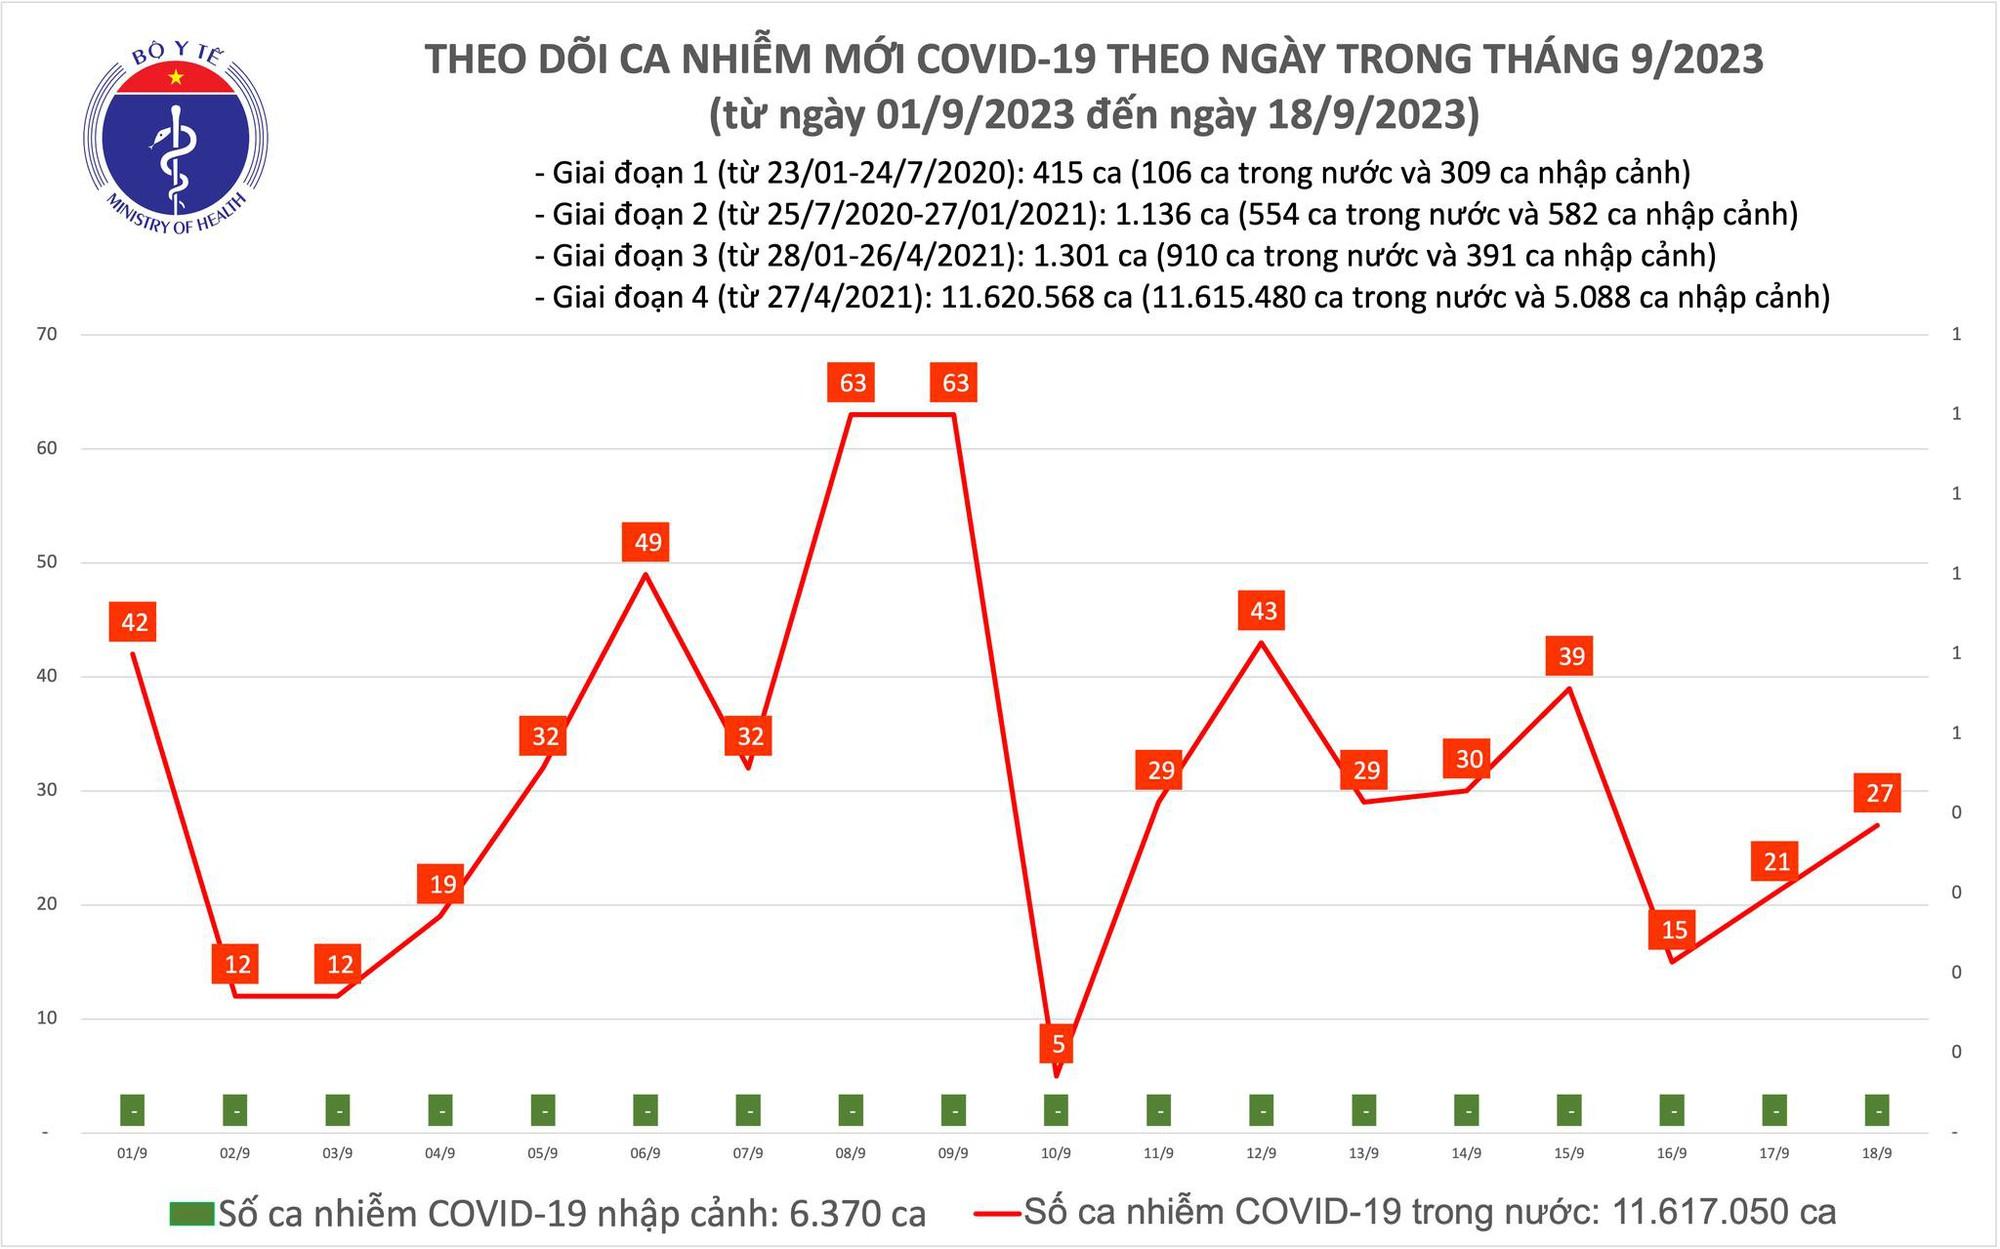 Ngày 18/9: Số mắc COVID-19 tiếp tục tăng nhẹ, lên 27 ca - Ảnh 1.